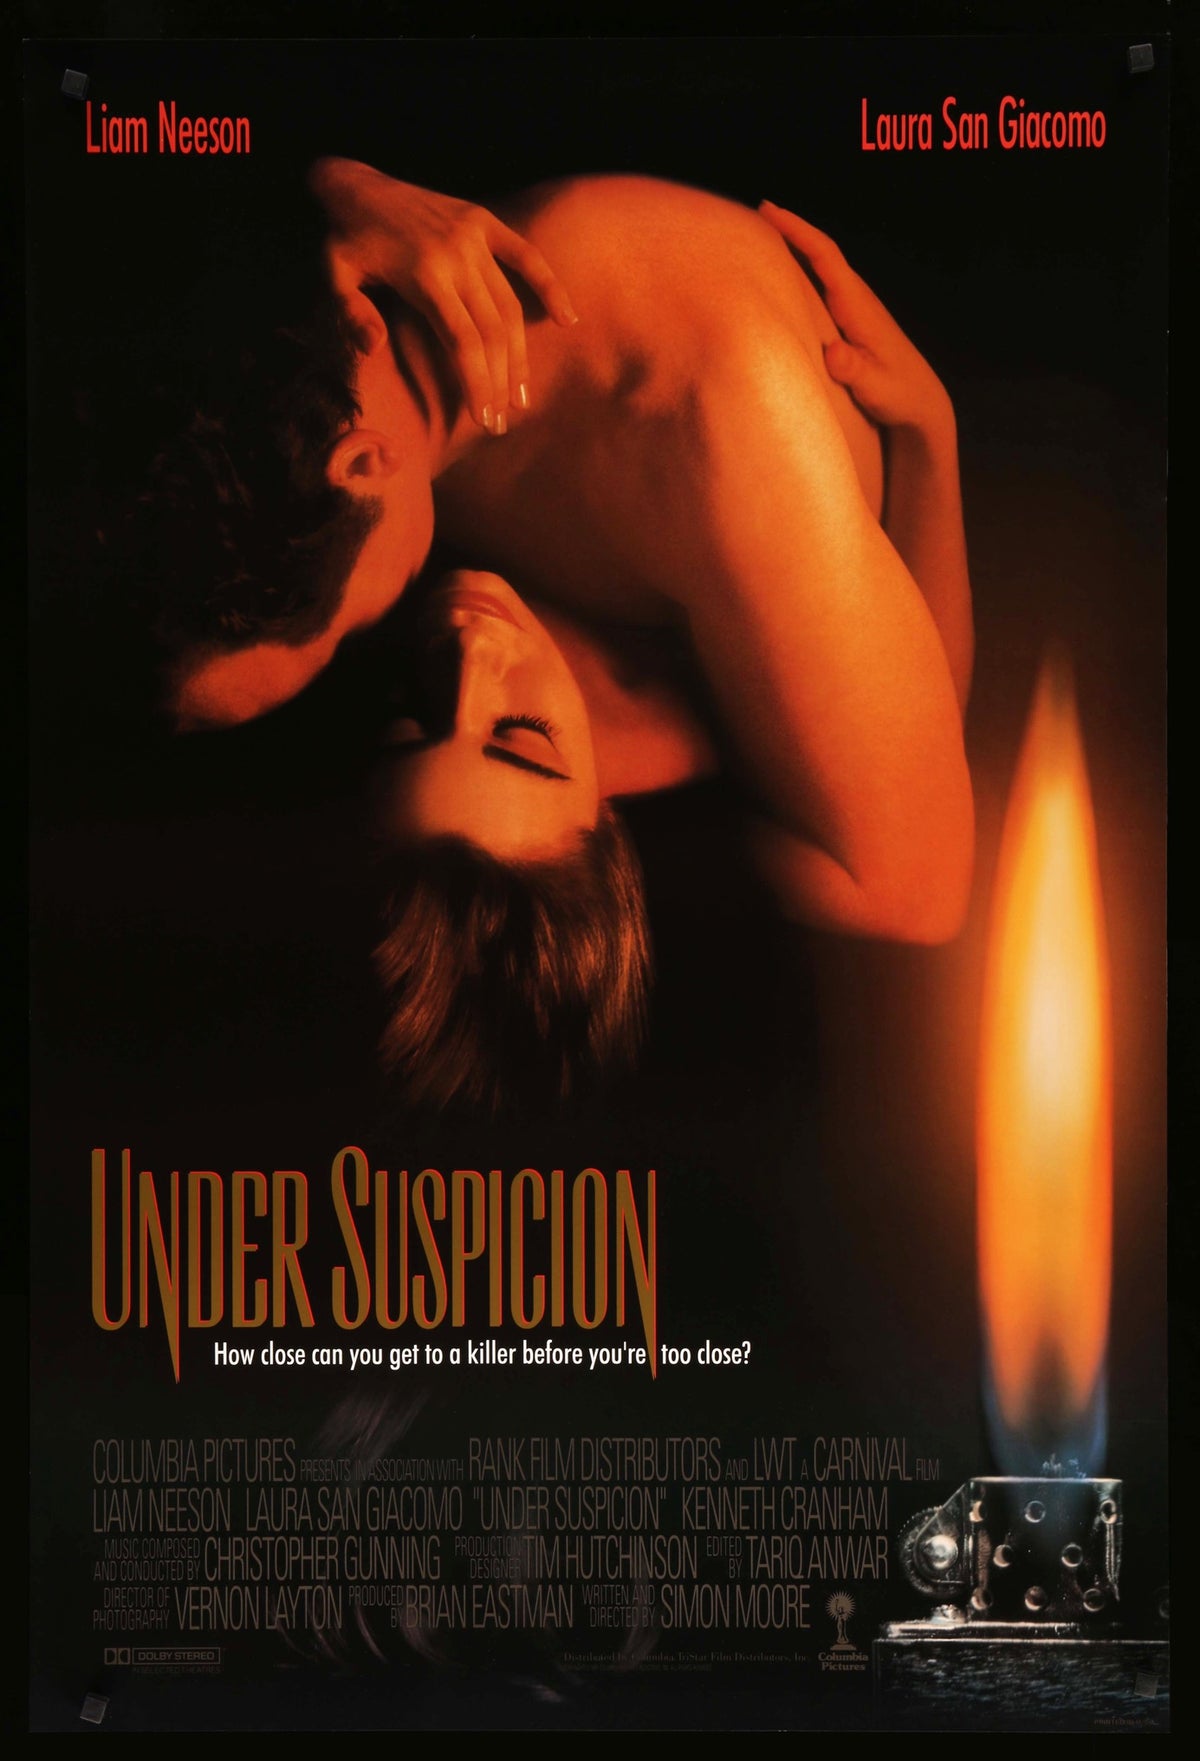 Under Suspicion (1991) original movie poster for sale at Original Film Art